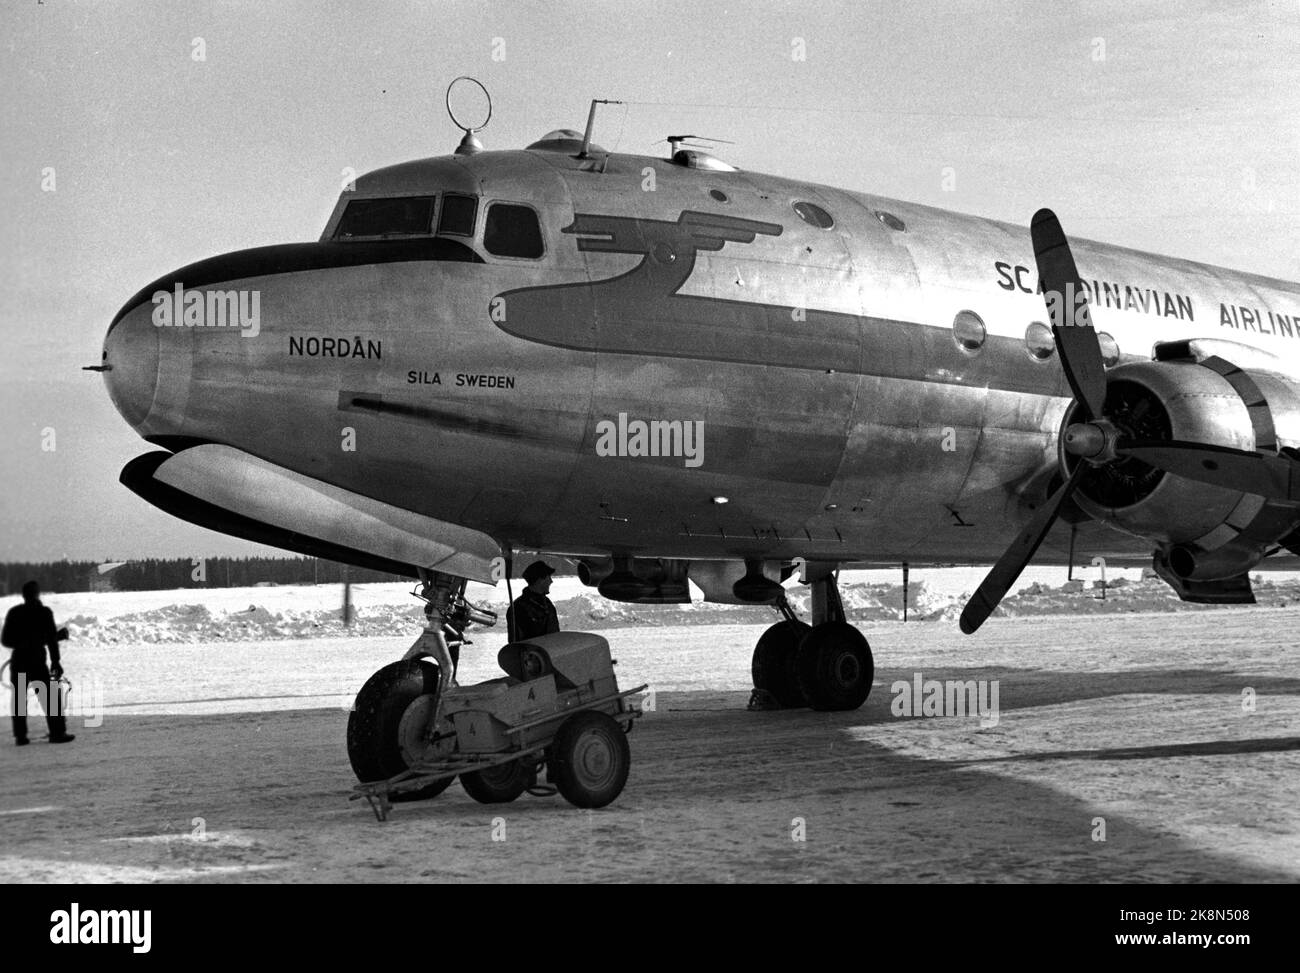 Oslo 19470222: SAS's erstes richtiges Atlantic-Flugzeug, ein Douglas DC-4 Skymaster mit Name und Registrationsnummer „Nordan“, die SE-BBA, eröffnet die skandinavische Flugroute nach Südamerika. Hier ist der Flug startbereit. Foto: NTB / NTB Stockfoto